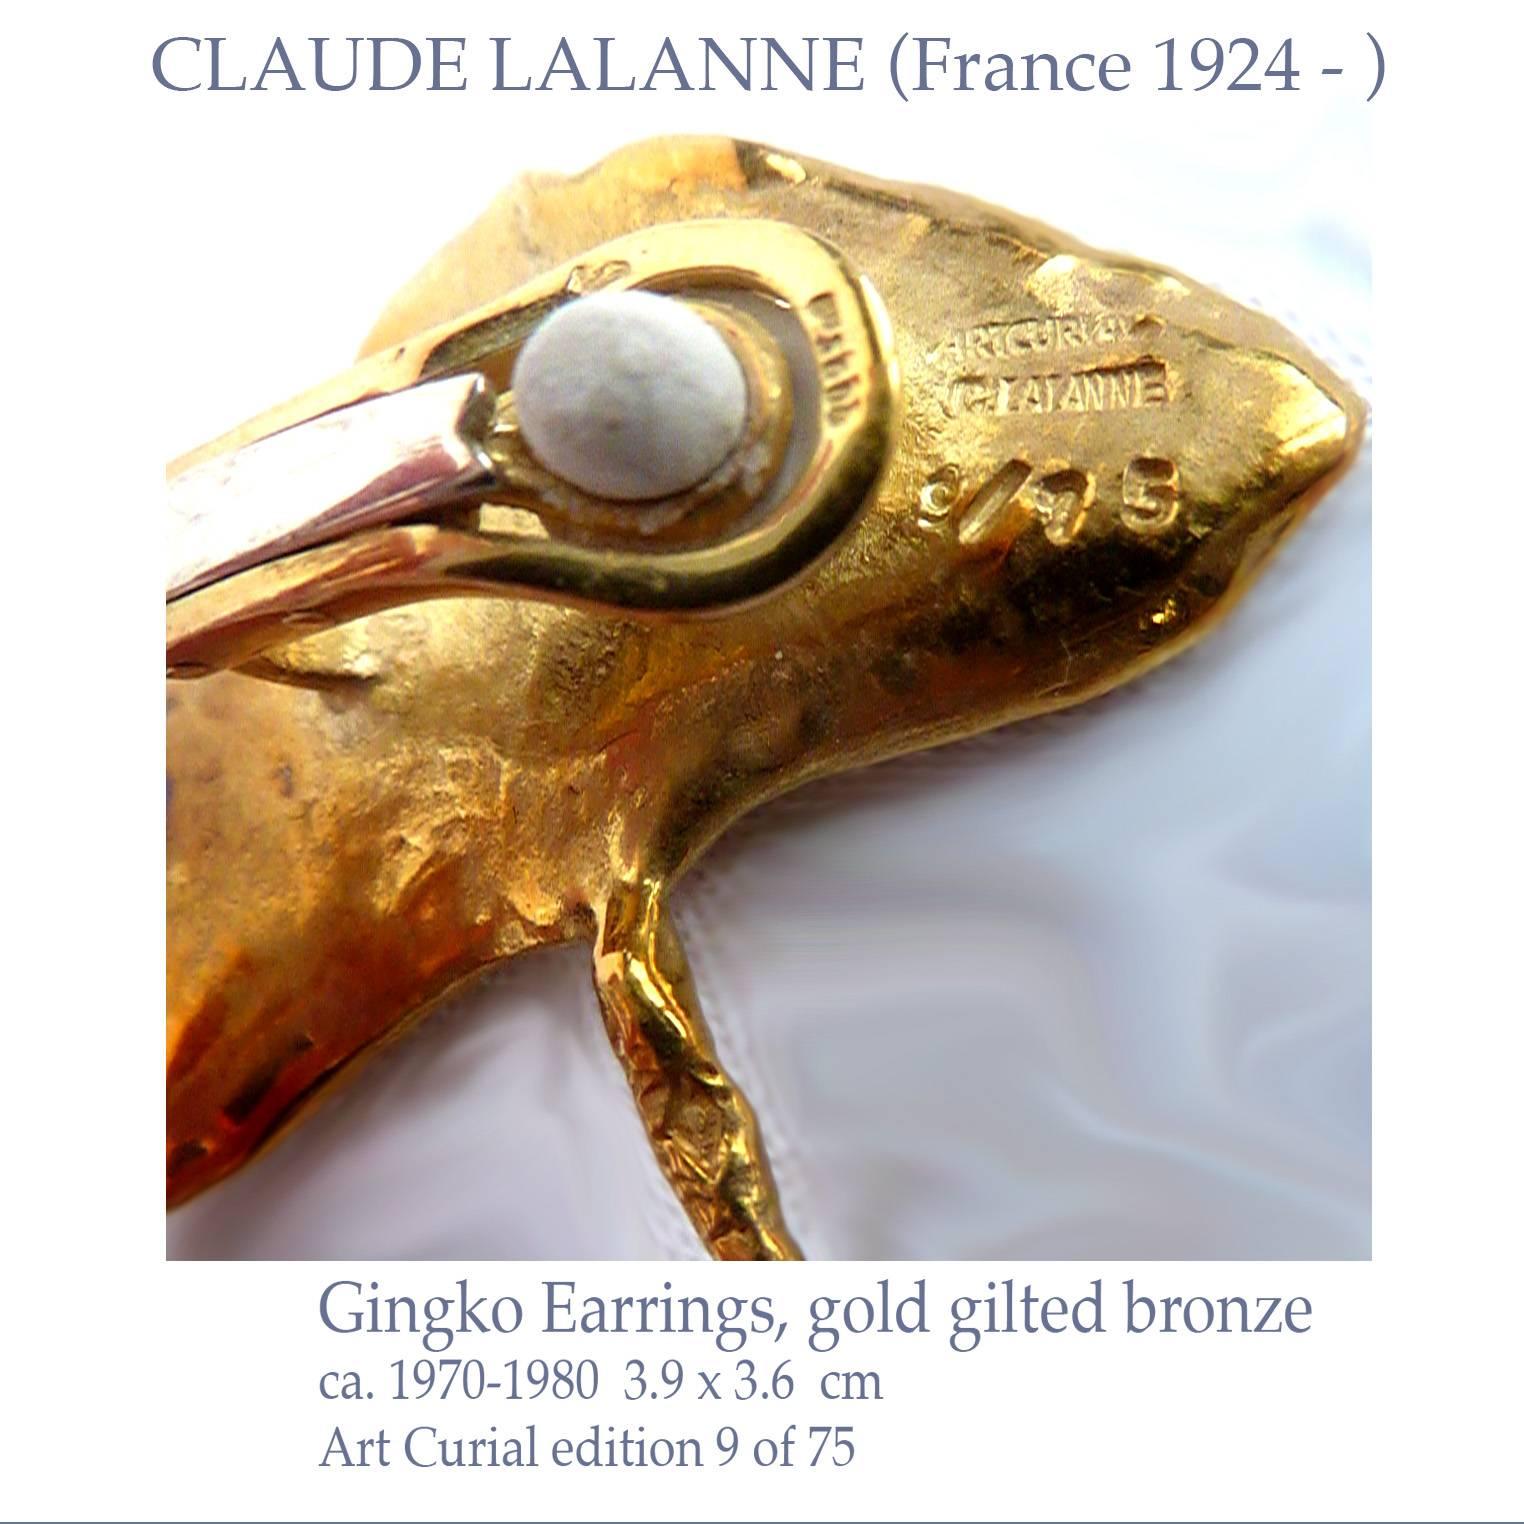 Women's CLAUDE LALANNE Gingko Earrings in original Paris ARTCURIAL BOX